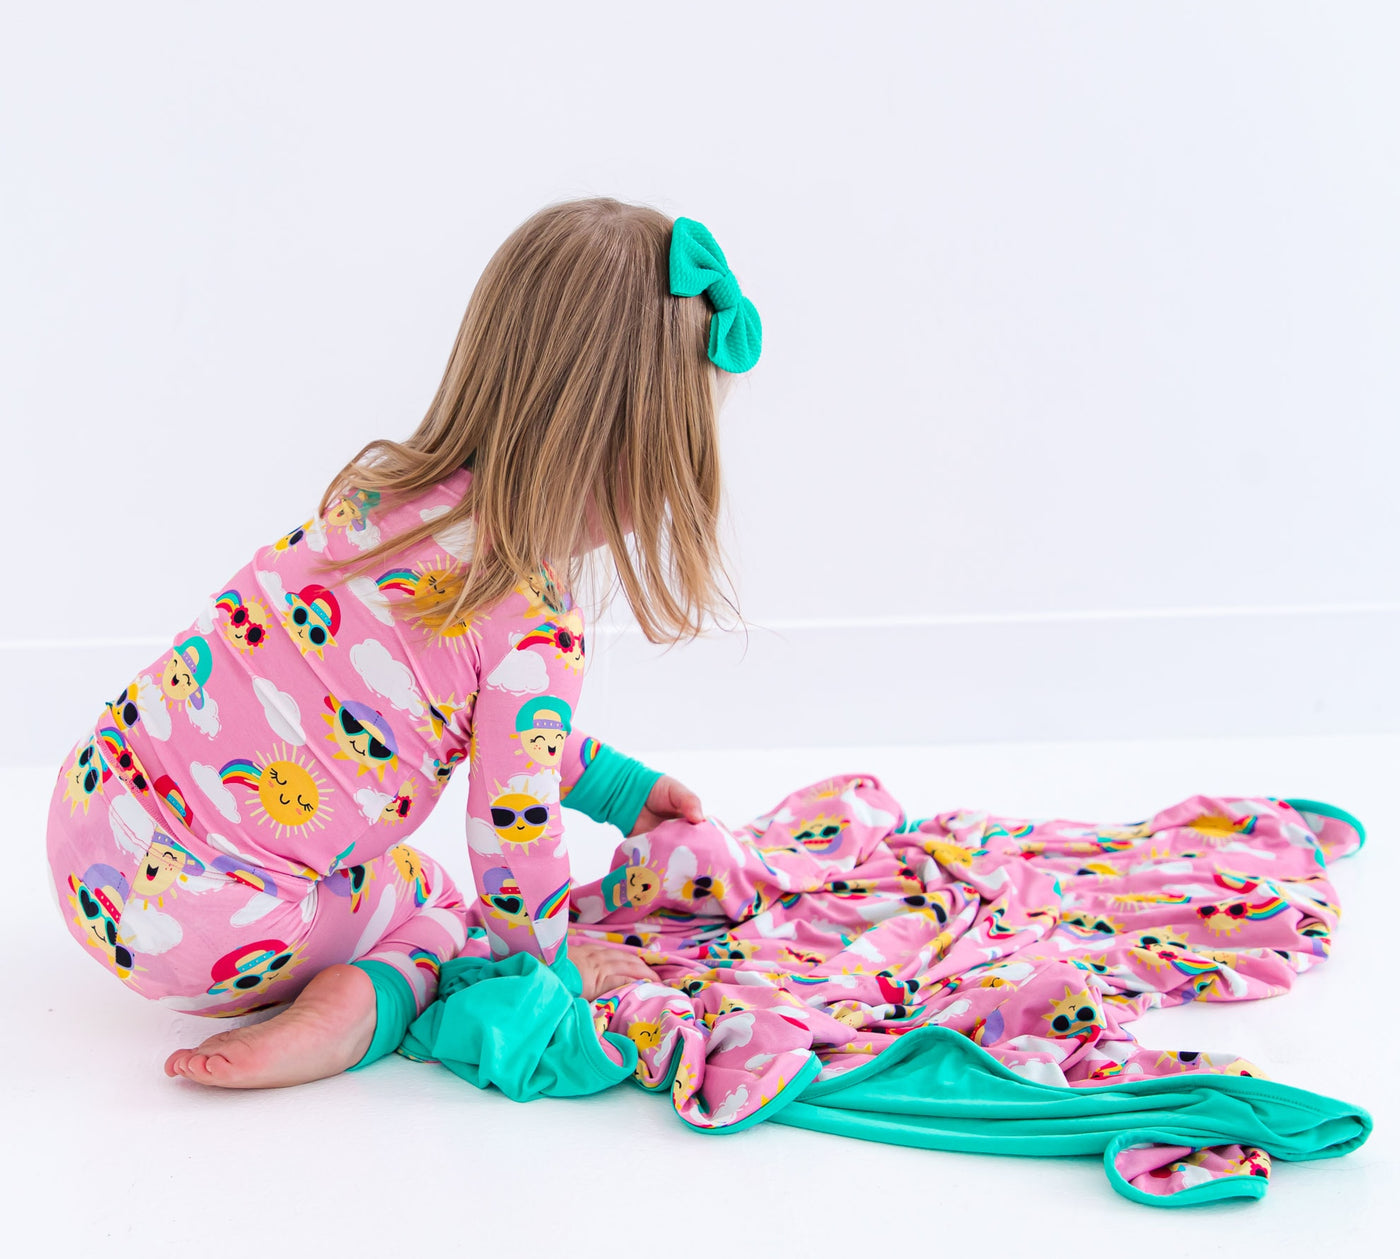 Aurora 2-piece pajamas-LONG